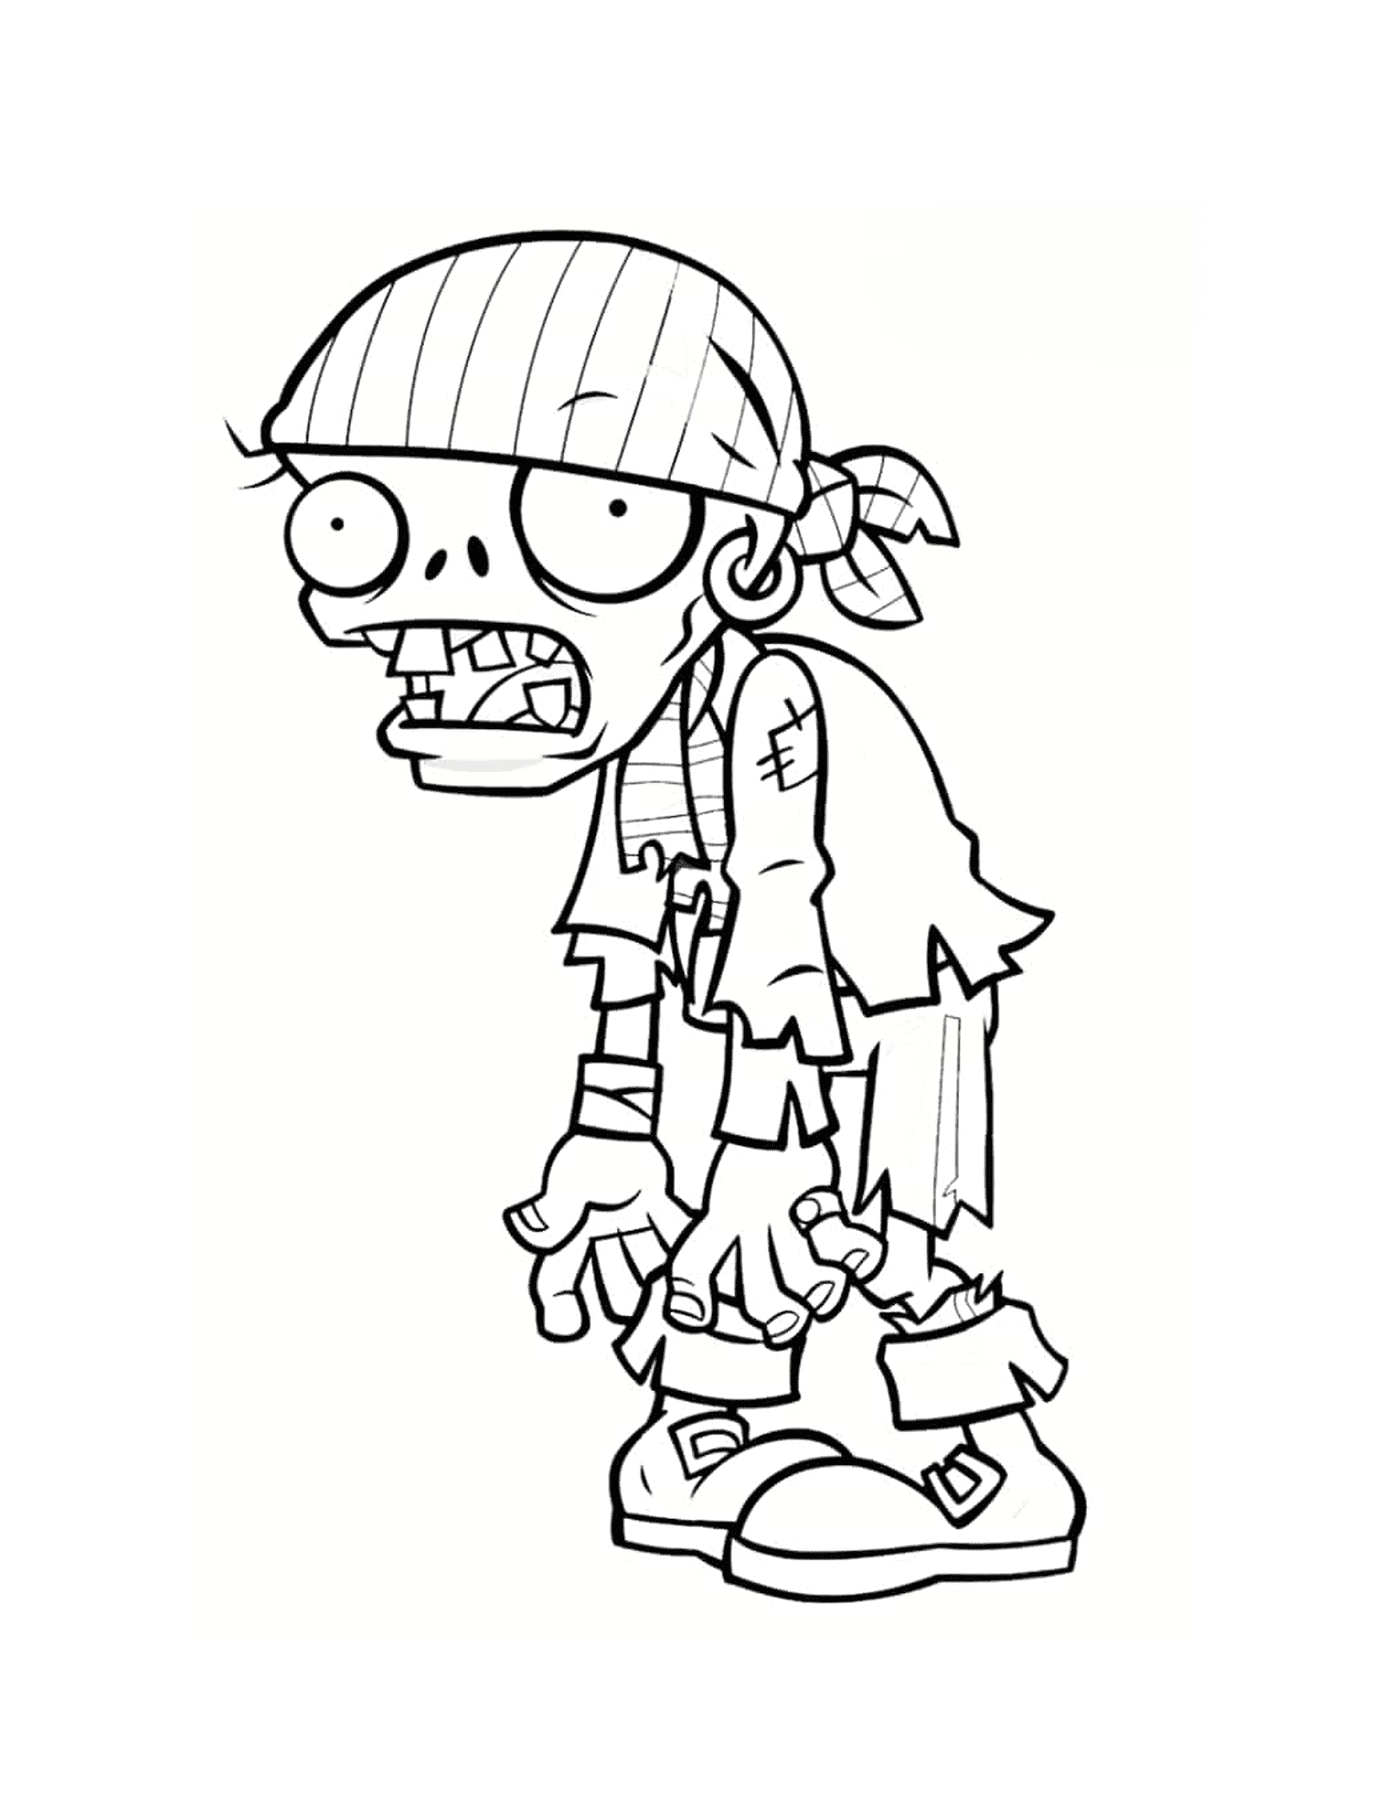  Ein Zombie trägt einen Piratenhut 